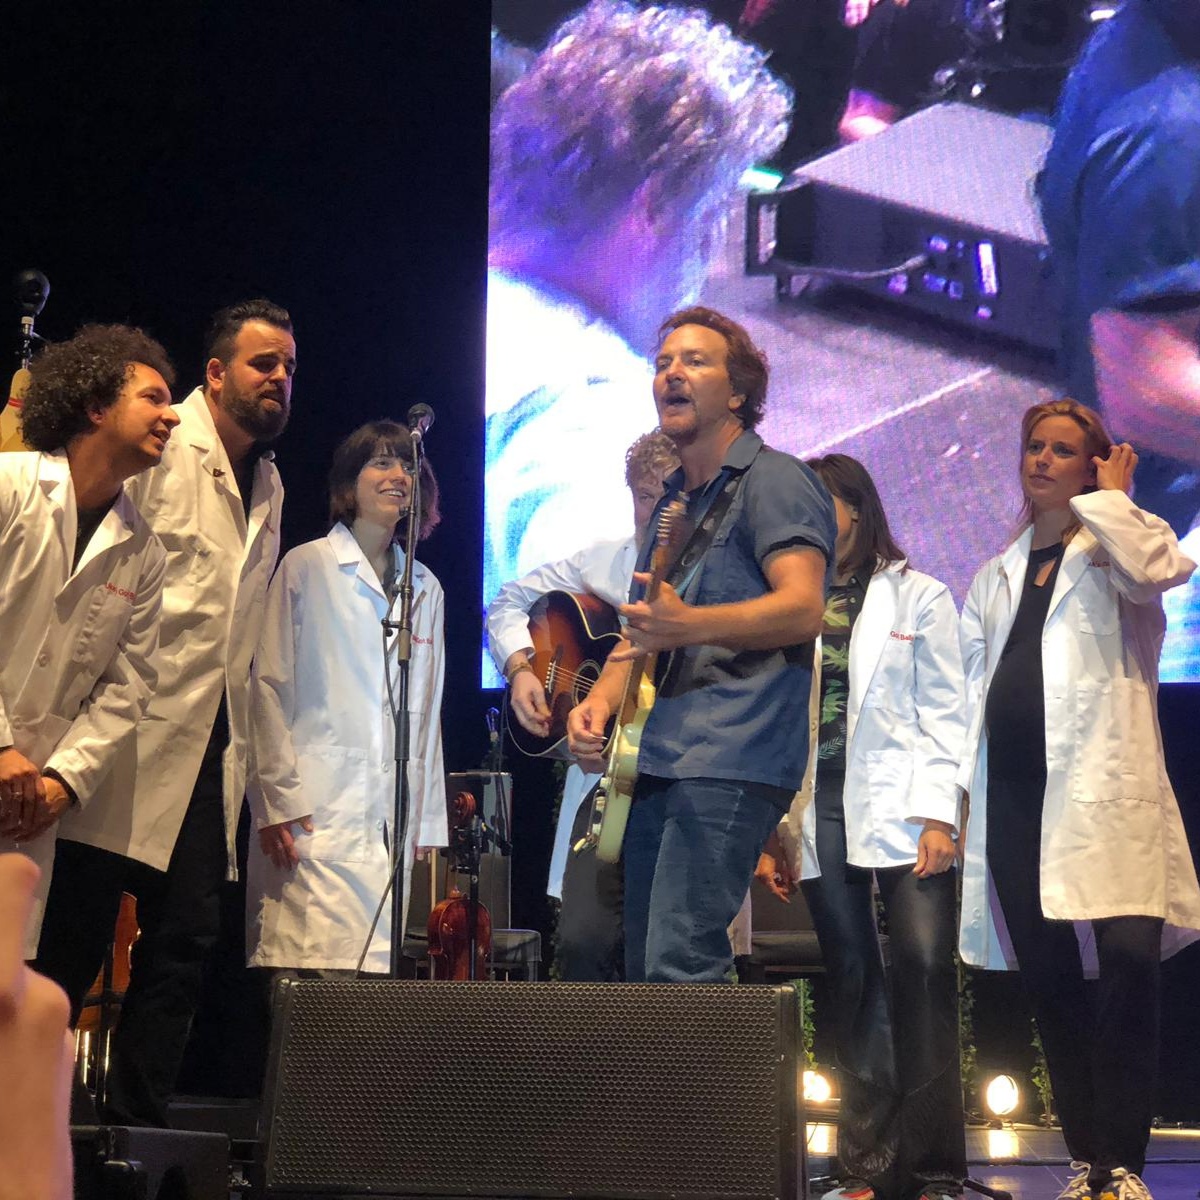 Eddie Vedder | 10/06/2019 AFAS Live, Amsterdam, The Netherlands